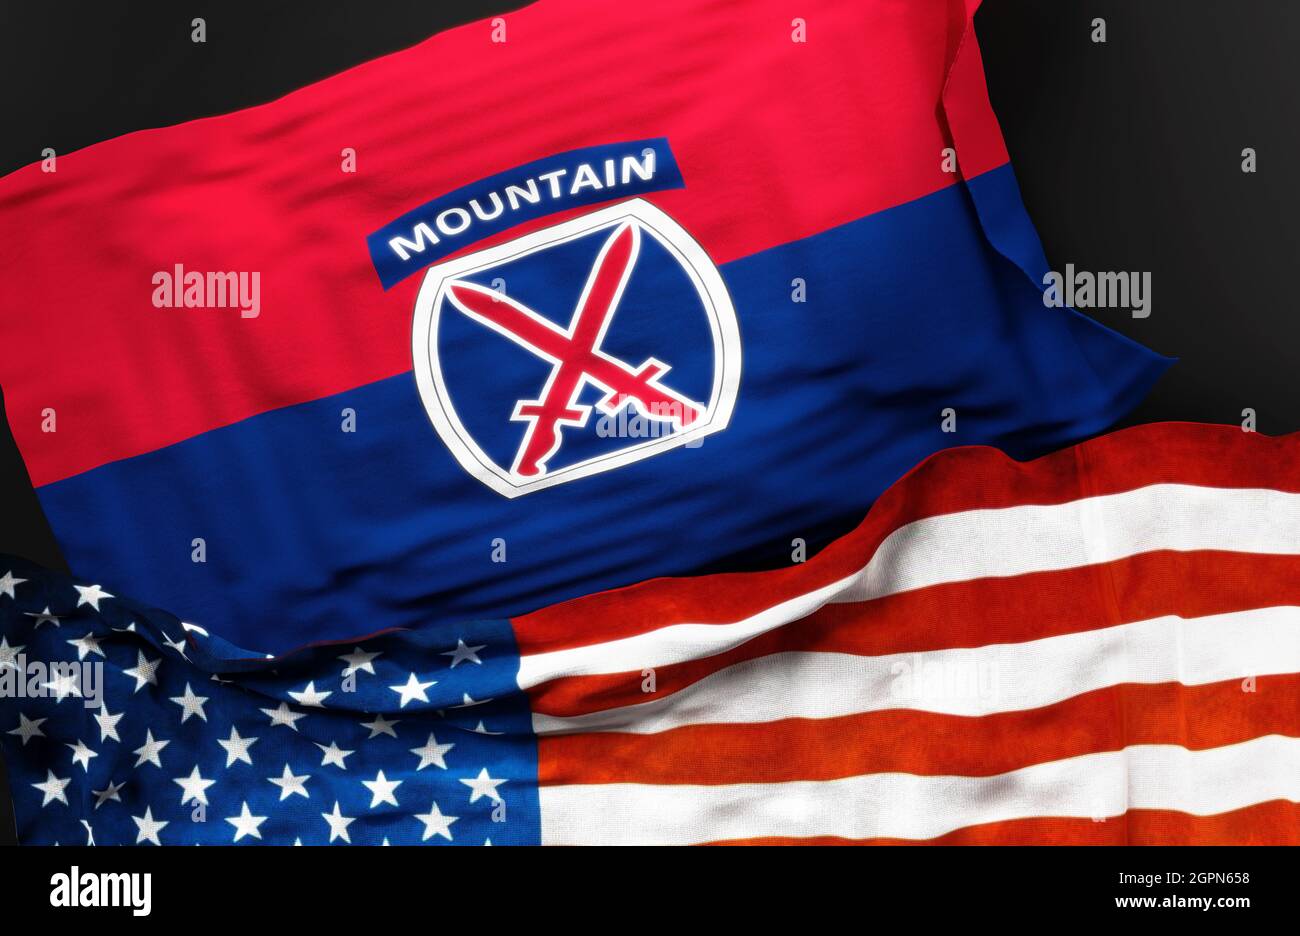 Flagge der United States Army 10th Mountain Division zusammen mit einer Flagge der Vereinigten Staaten von Amerika als Symbol für eine Verbindung zwischen ihnen, 3d i Stockfoto